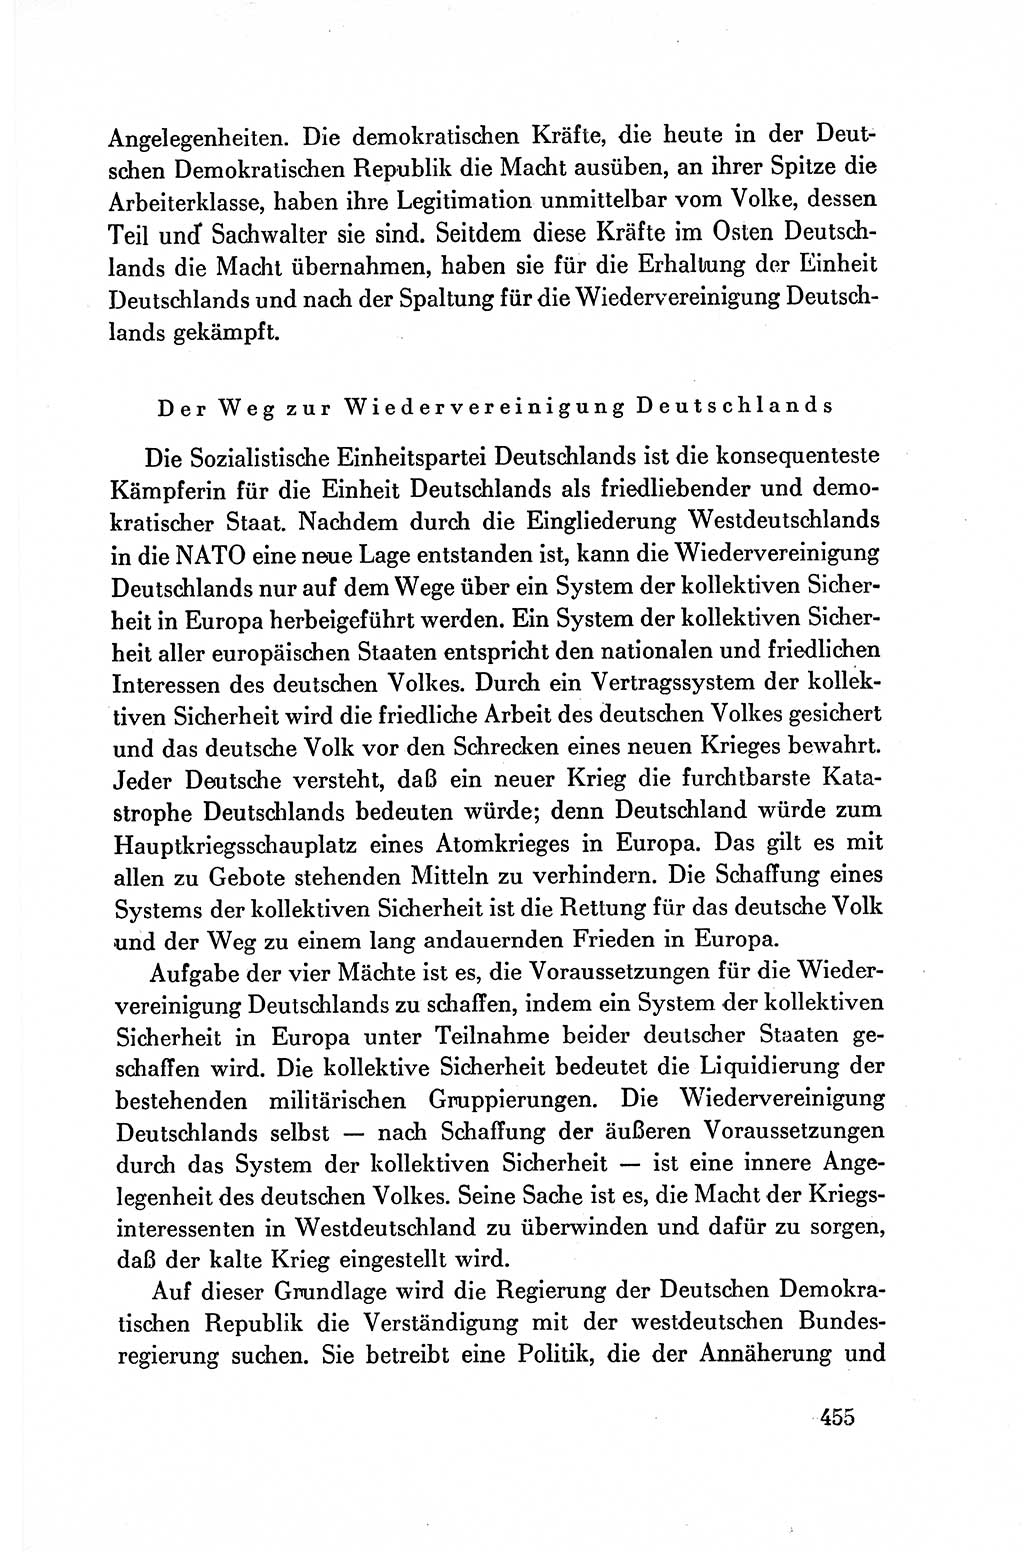 Dokumente der Sozialistischen Einheitspartei Deutschlands (SED) [Deutsche Demokratische Republik (DDR)] 1954-1955, Seite 455 (Dok. SED DDR 1954-1955, S. 455)